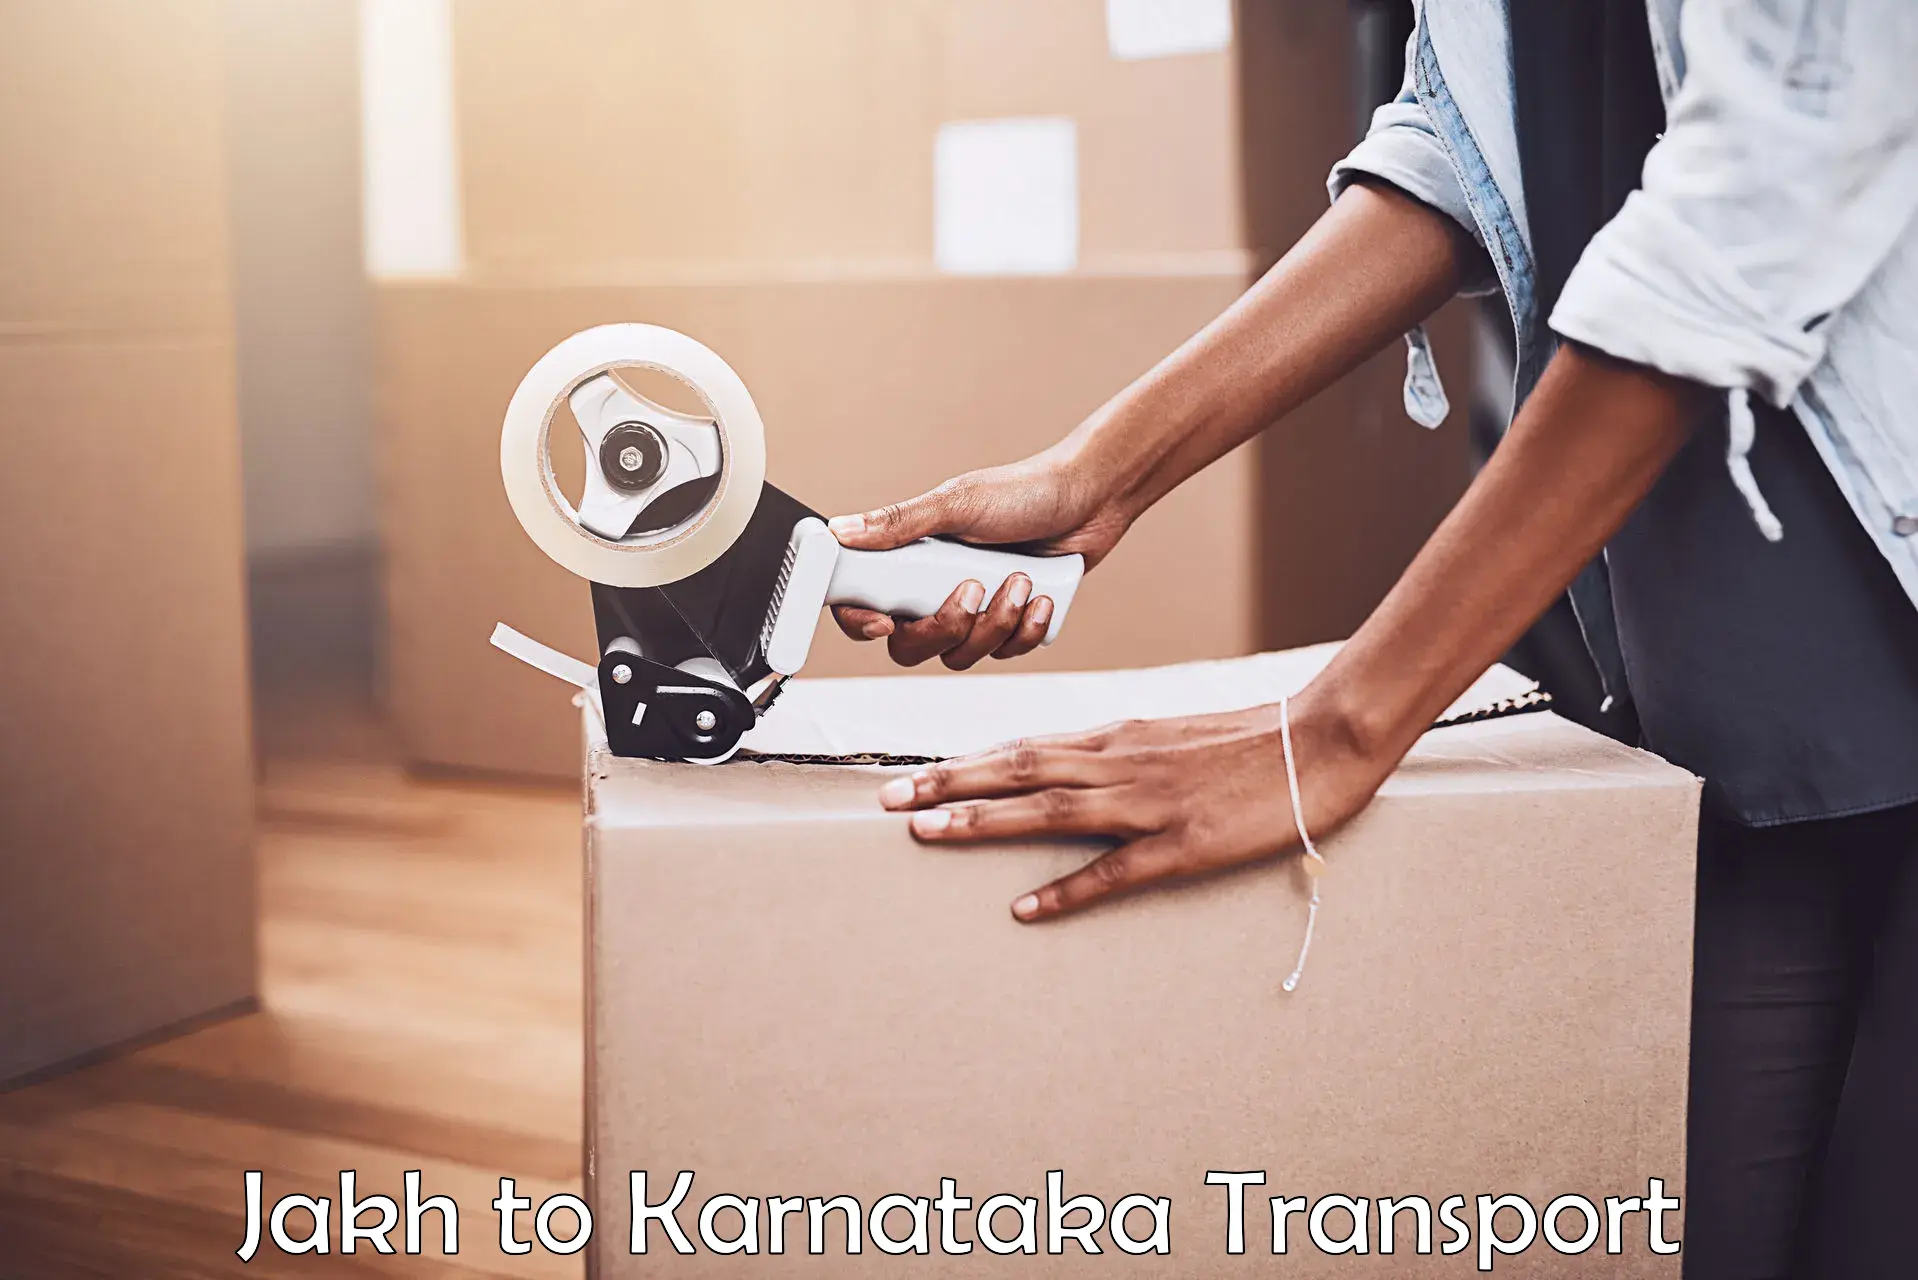 Daily transport service Jakh to Khanapur Karnataka